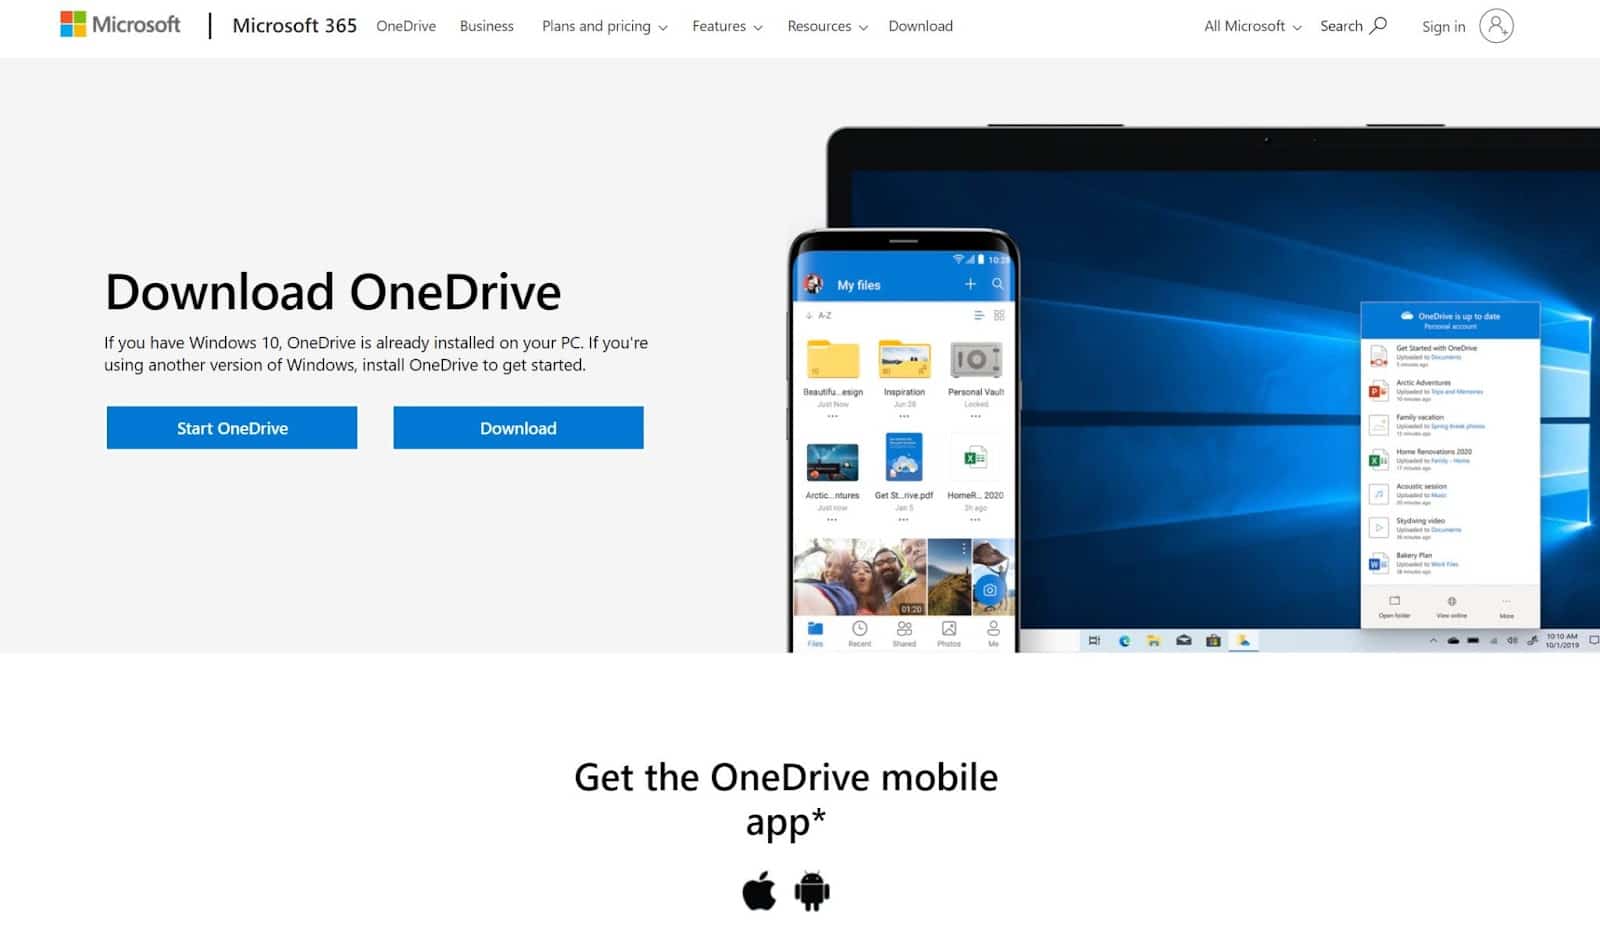 Microsoft OneDrive Homepage